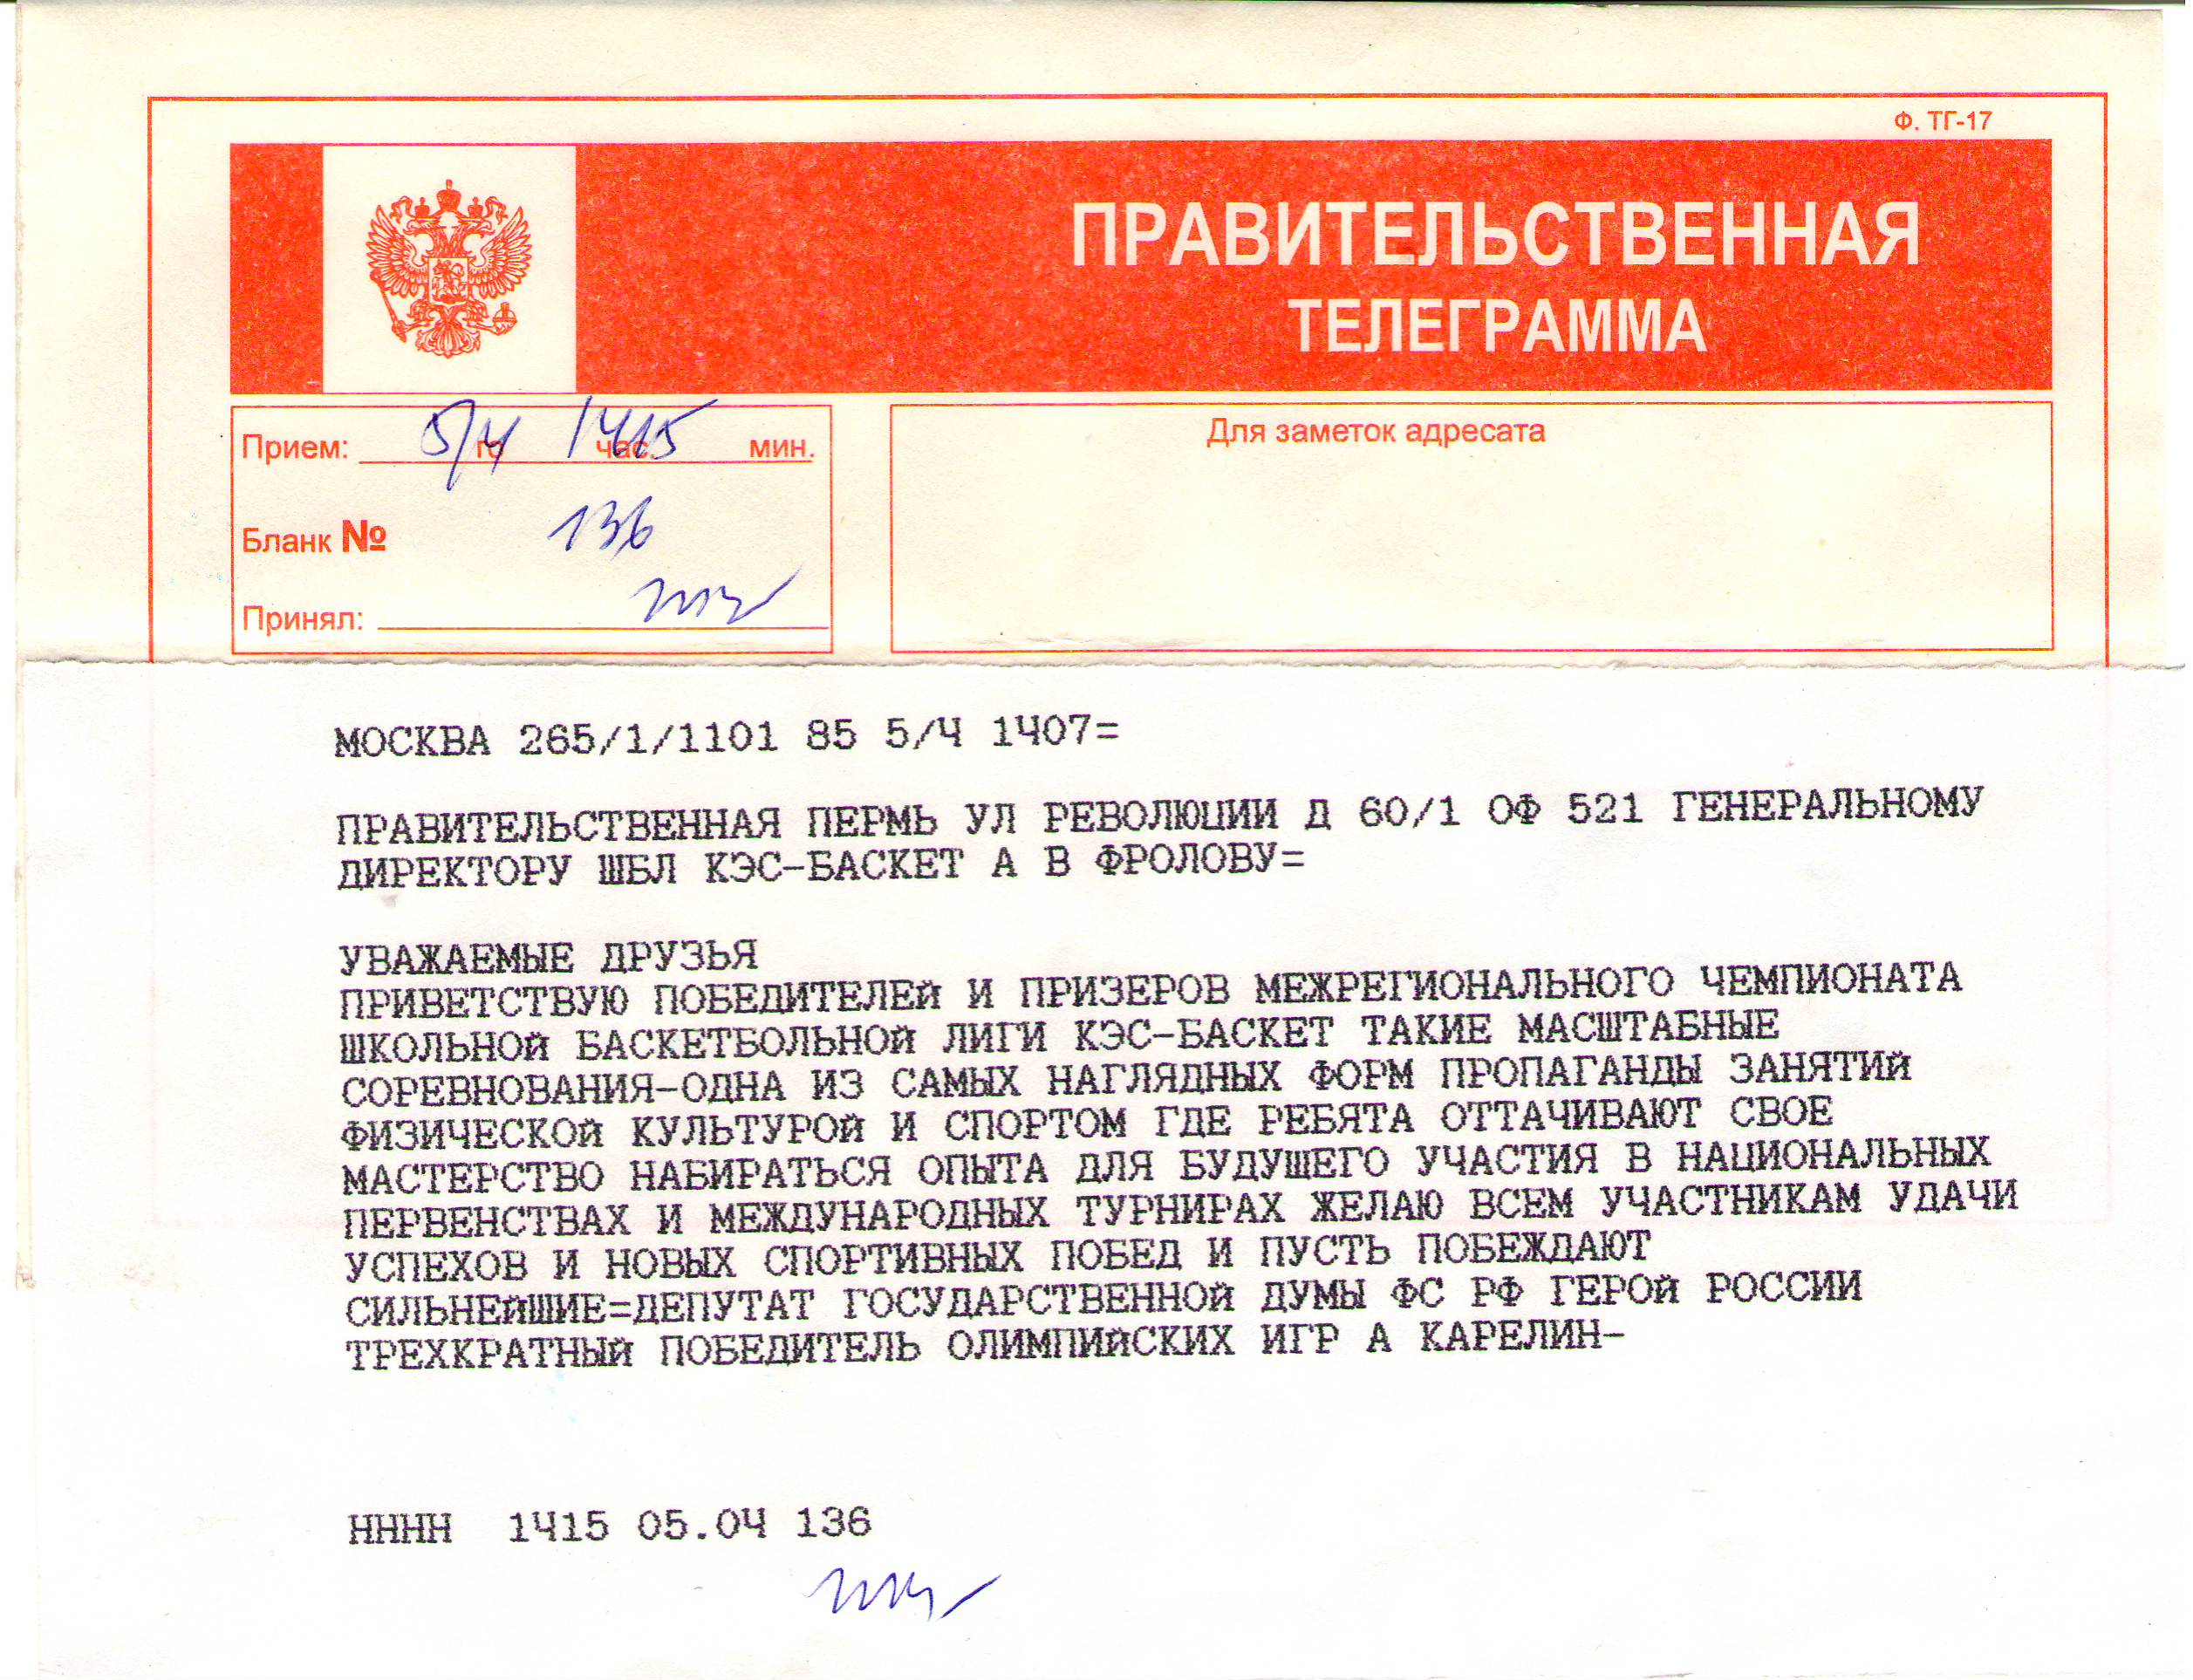 Скачать бесплатно бланк правительственной телеграммы фото 97